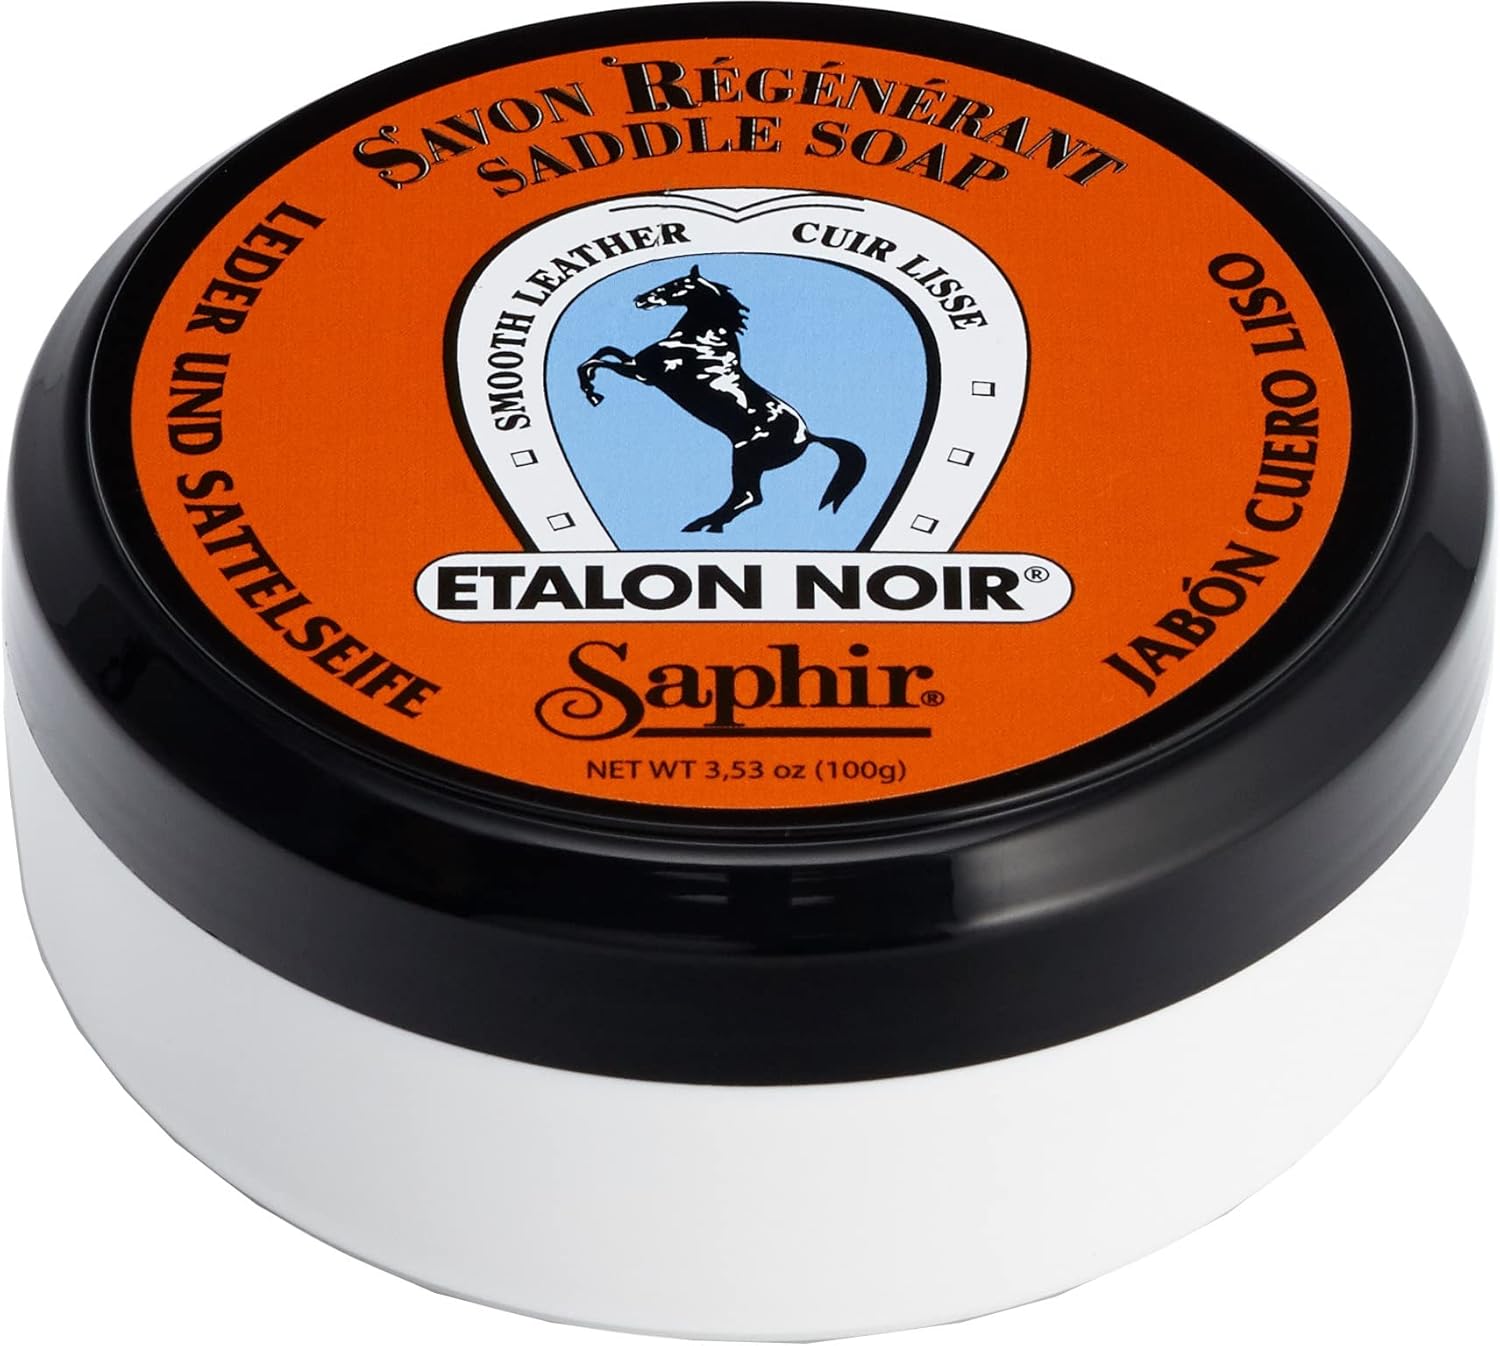 Saphir Etalon Noir Ointment Soap – Clean and Restore Saddle Leather